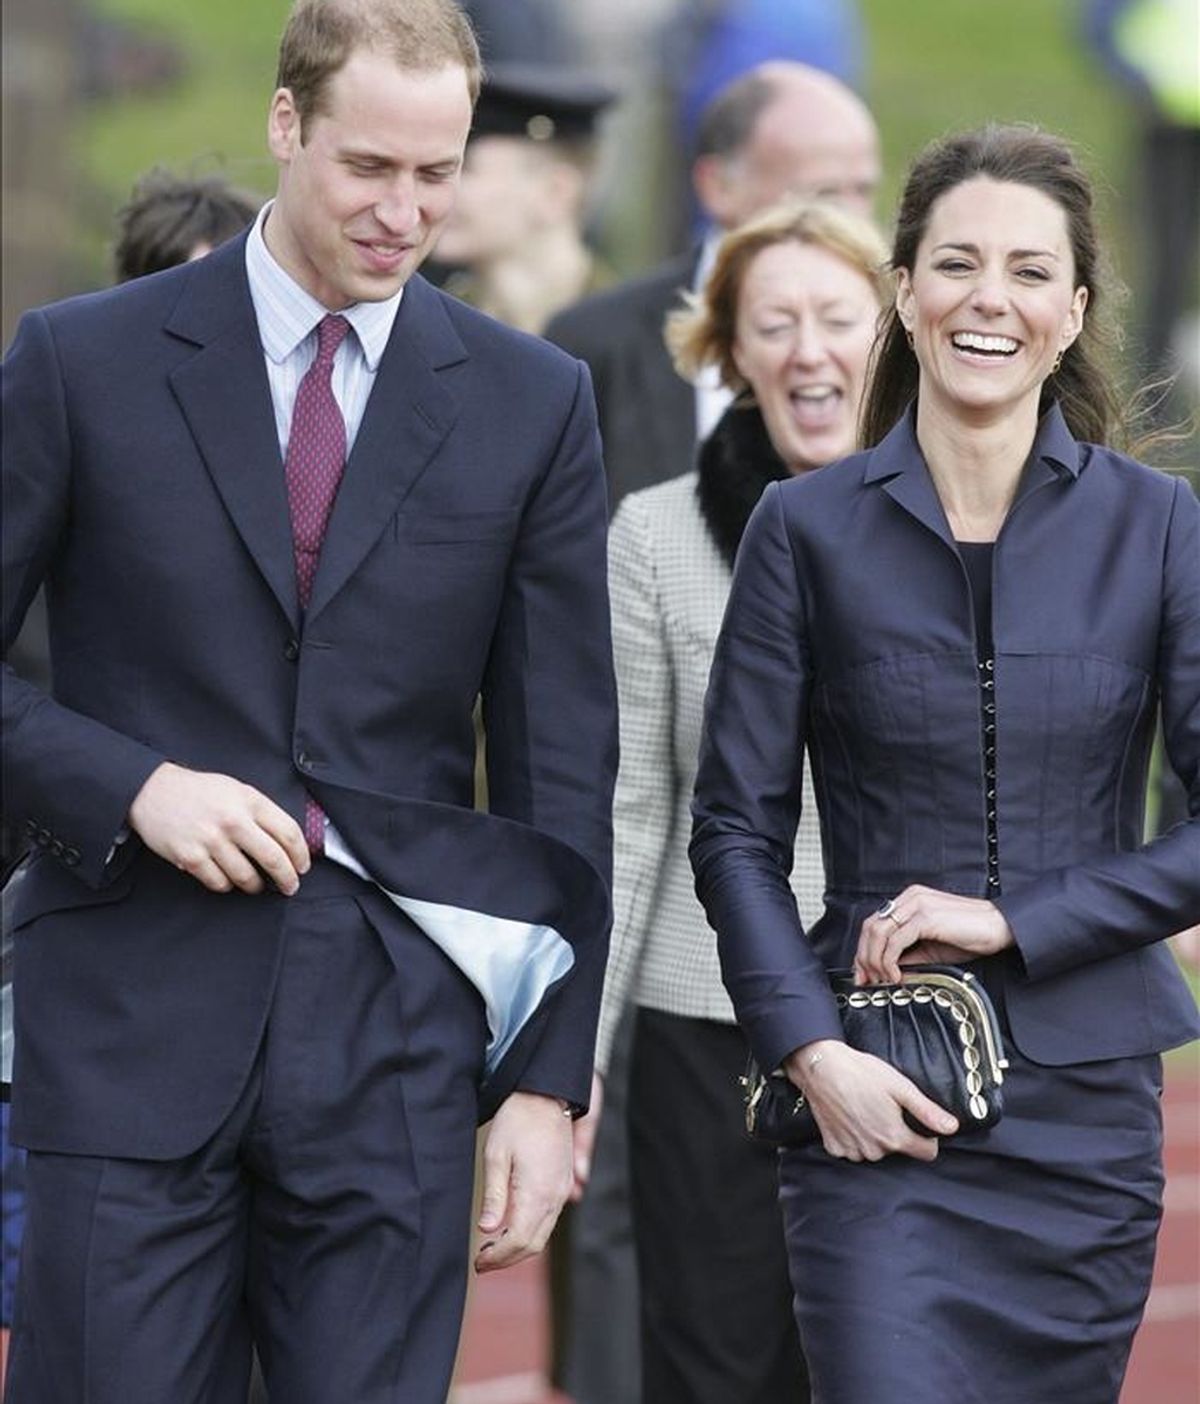 El príncipe Guillermo de Inglaterra y su novia Kate Middleton llegan a la Aldridge Community Academy de Darwen, noroeste de Reino Unido, el pasado 10 de abril, en el último acto oficial como solteros antes de su boda, el 29 de abril. EFE